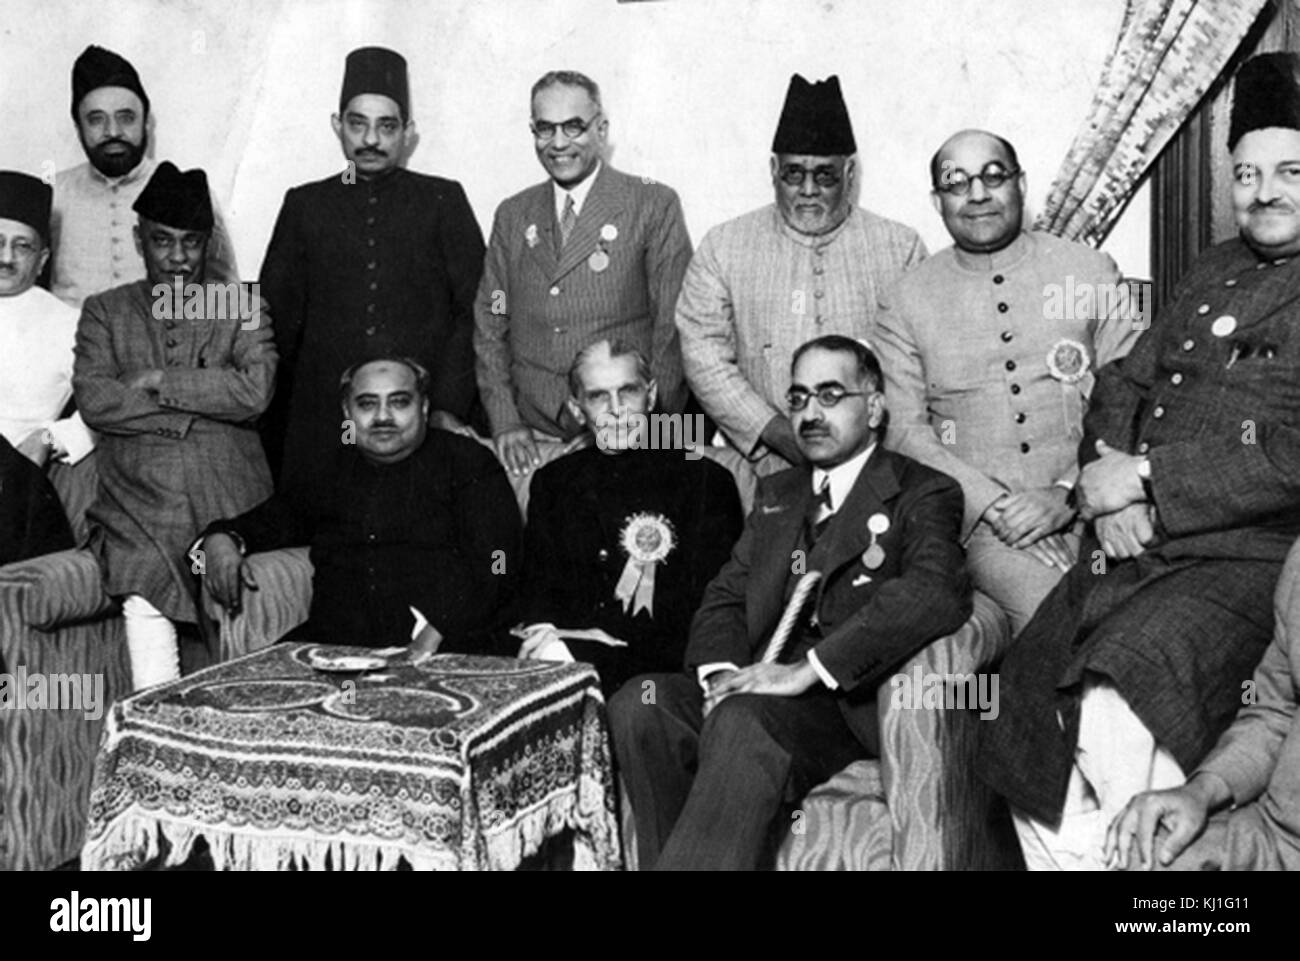 Les dirigeants pakistanais 1947 : Mohammed Ali Jinnah (centre) ; Sir Sikander Hayat Khan (à droite), Sir Nizam-ud-Din (à gauche) avec Liaquat Ali Khan (rangée arrière, deuxième à droite). Banque D'Images